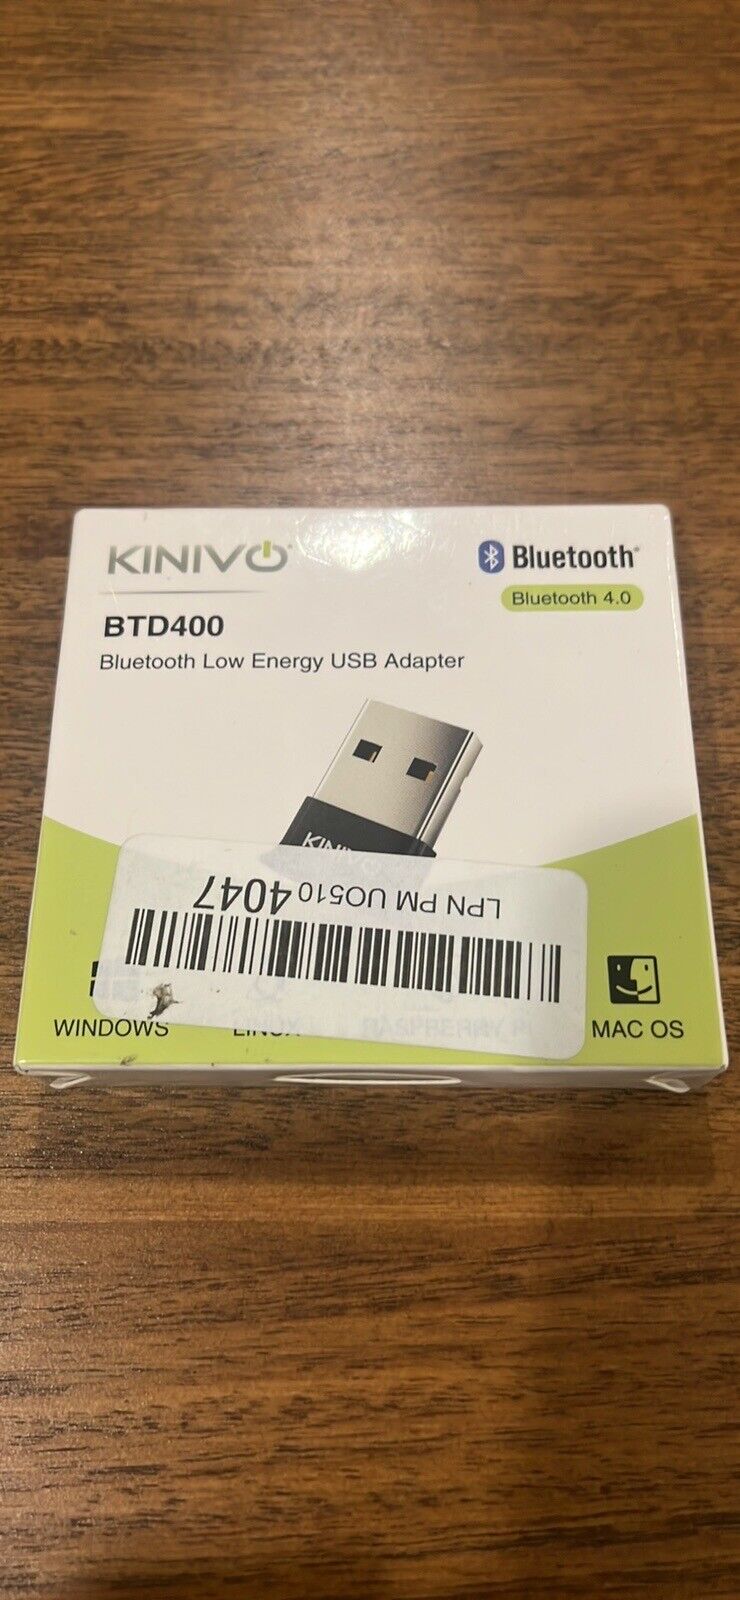 Kinivo Btd-400 Bluetooth 4.0 Usb Adapter For Windows 10/8.1/8/7/Vista US SELLER